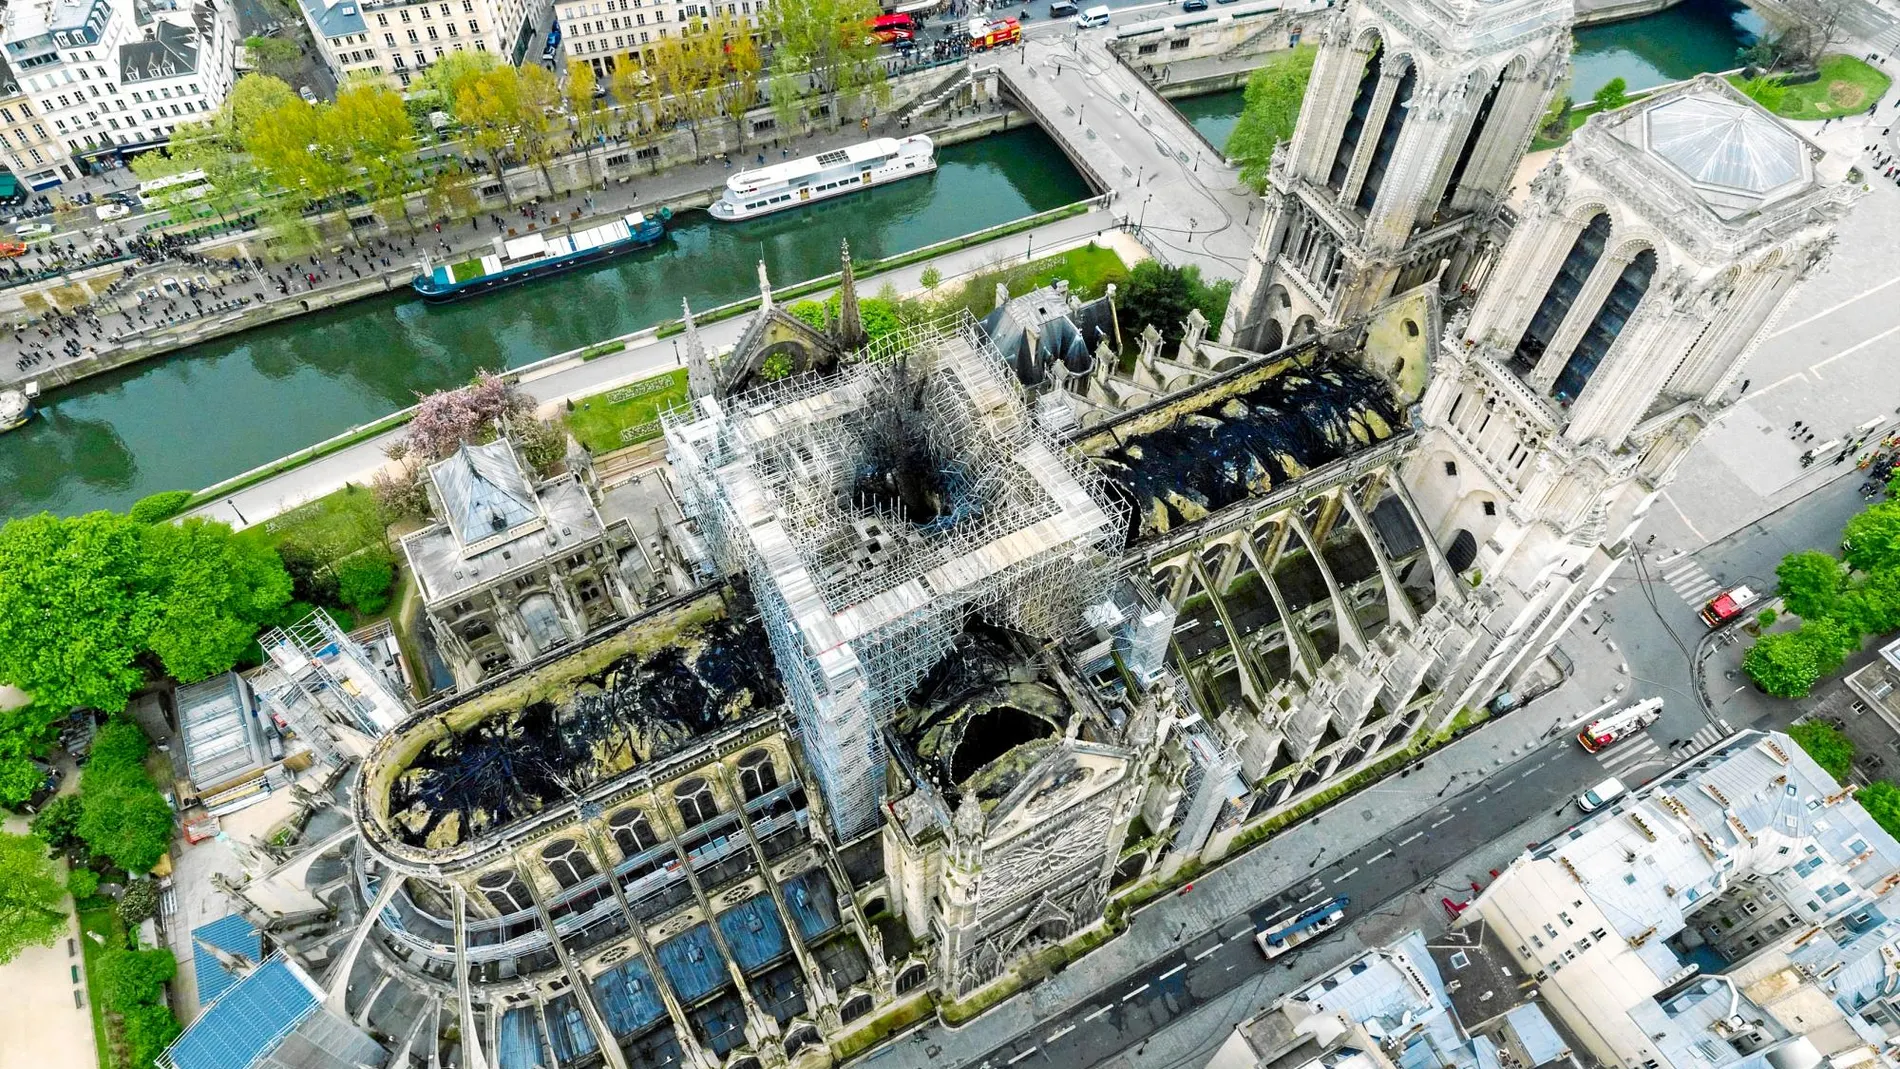 Impresionante vista aérea de la catedral de Notre Dame donde se pueden apreciar perfectamente los estragos causados por el incendio del pasado día 15. Foto: Gigarama.ru